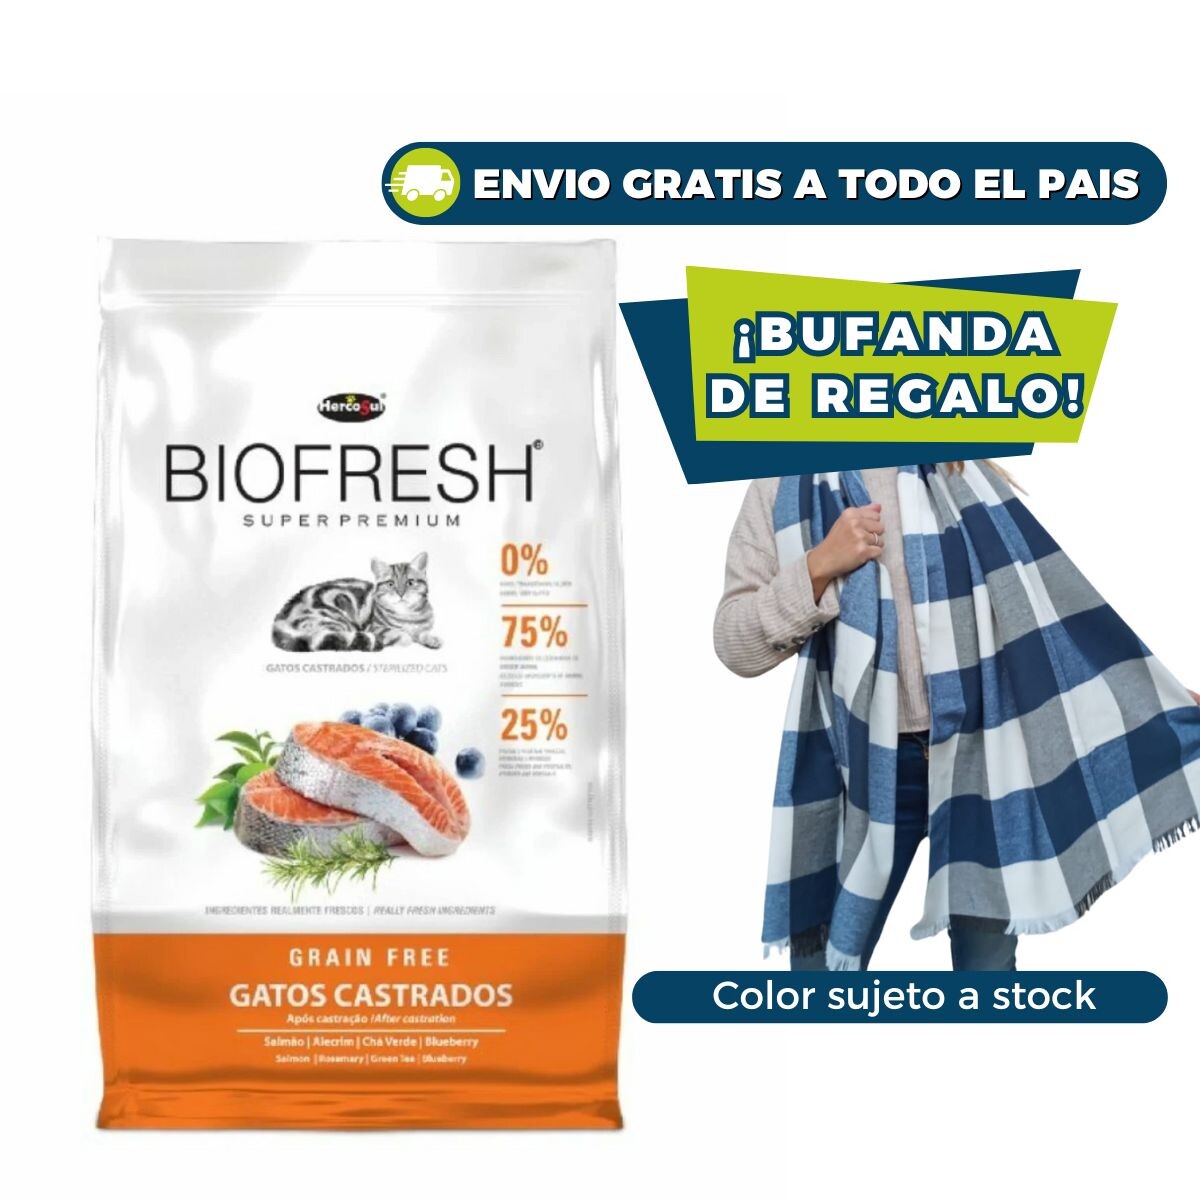 BIOFRESH GATOS CASTRADOS - 7.5 KG + BUFANDA DE REGALO 